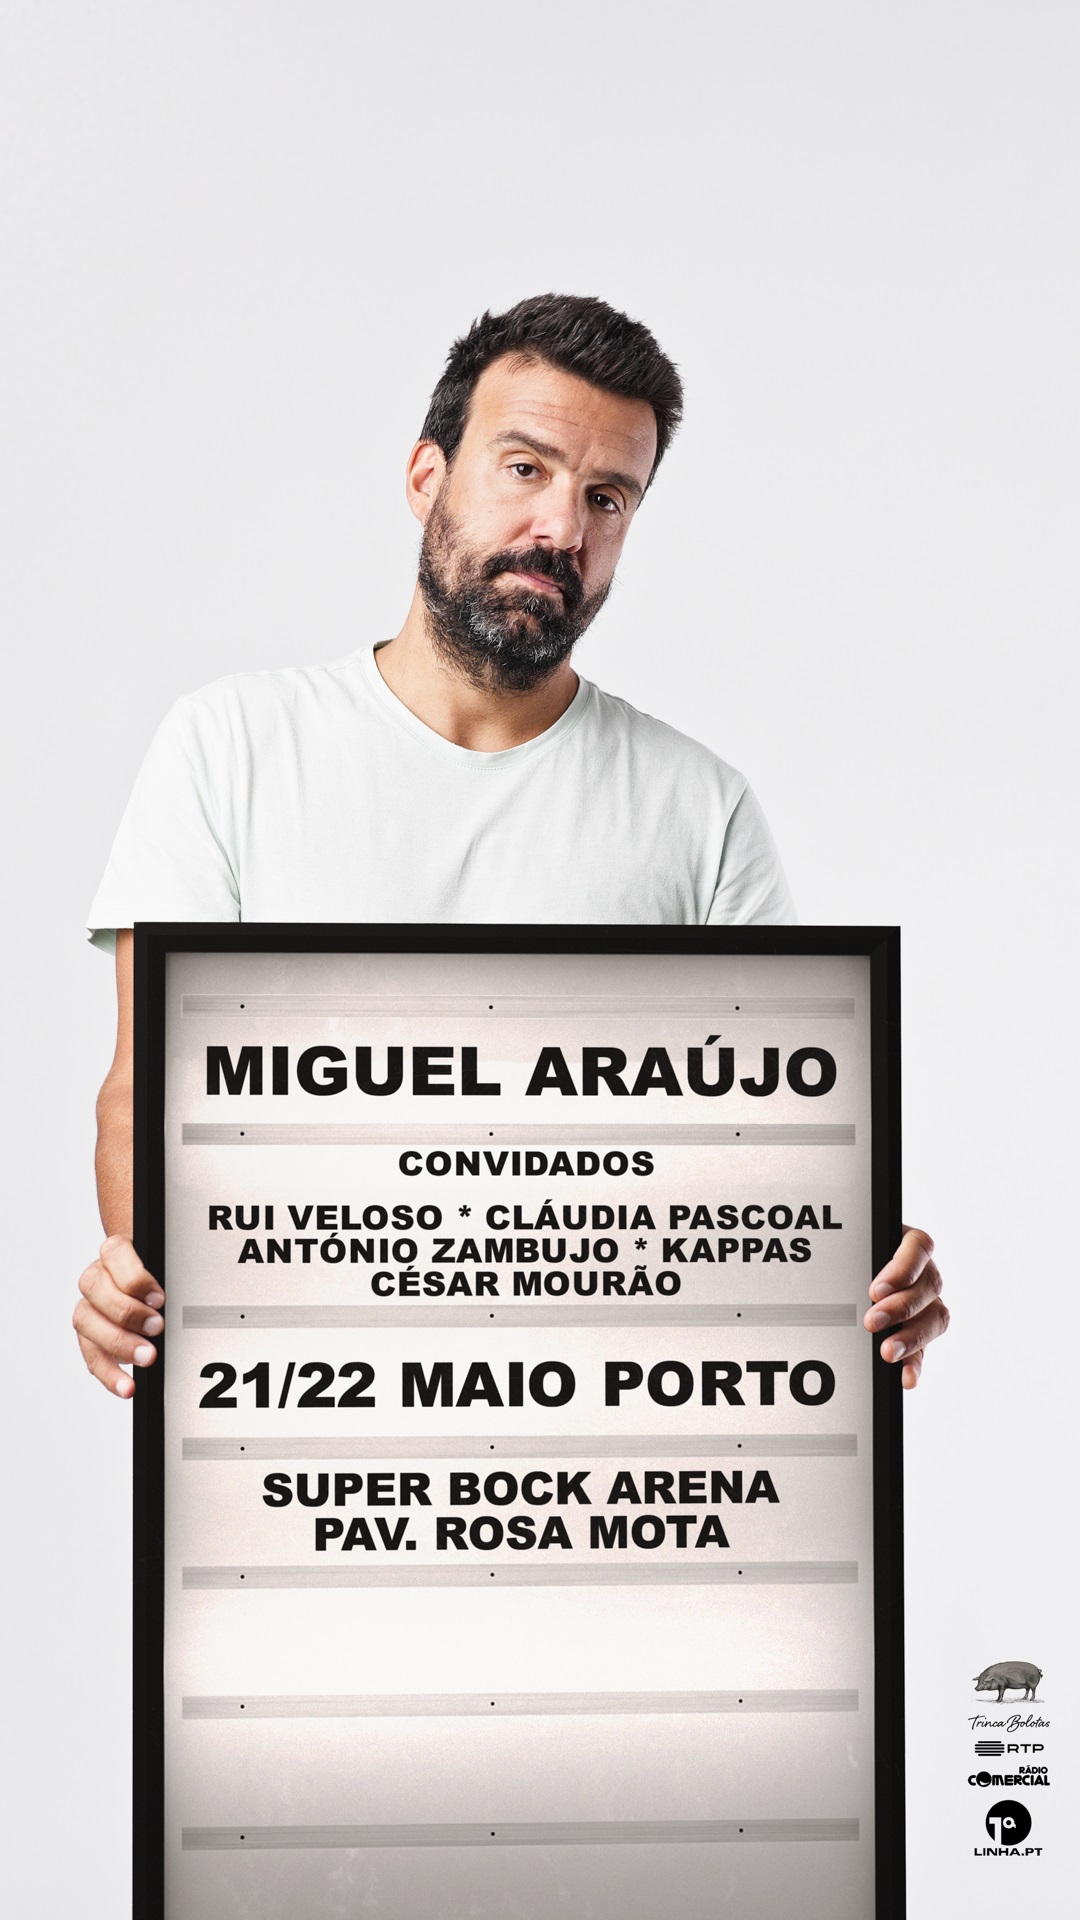 Miguel Araújo - Event